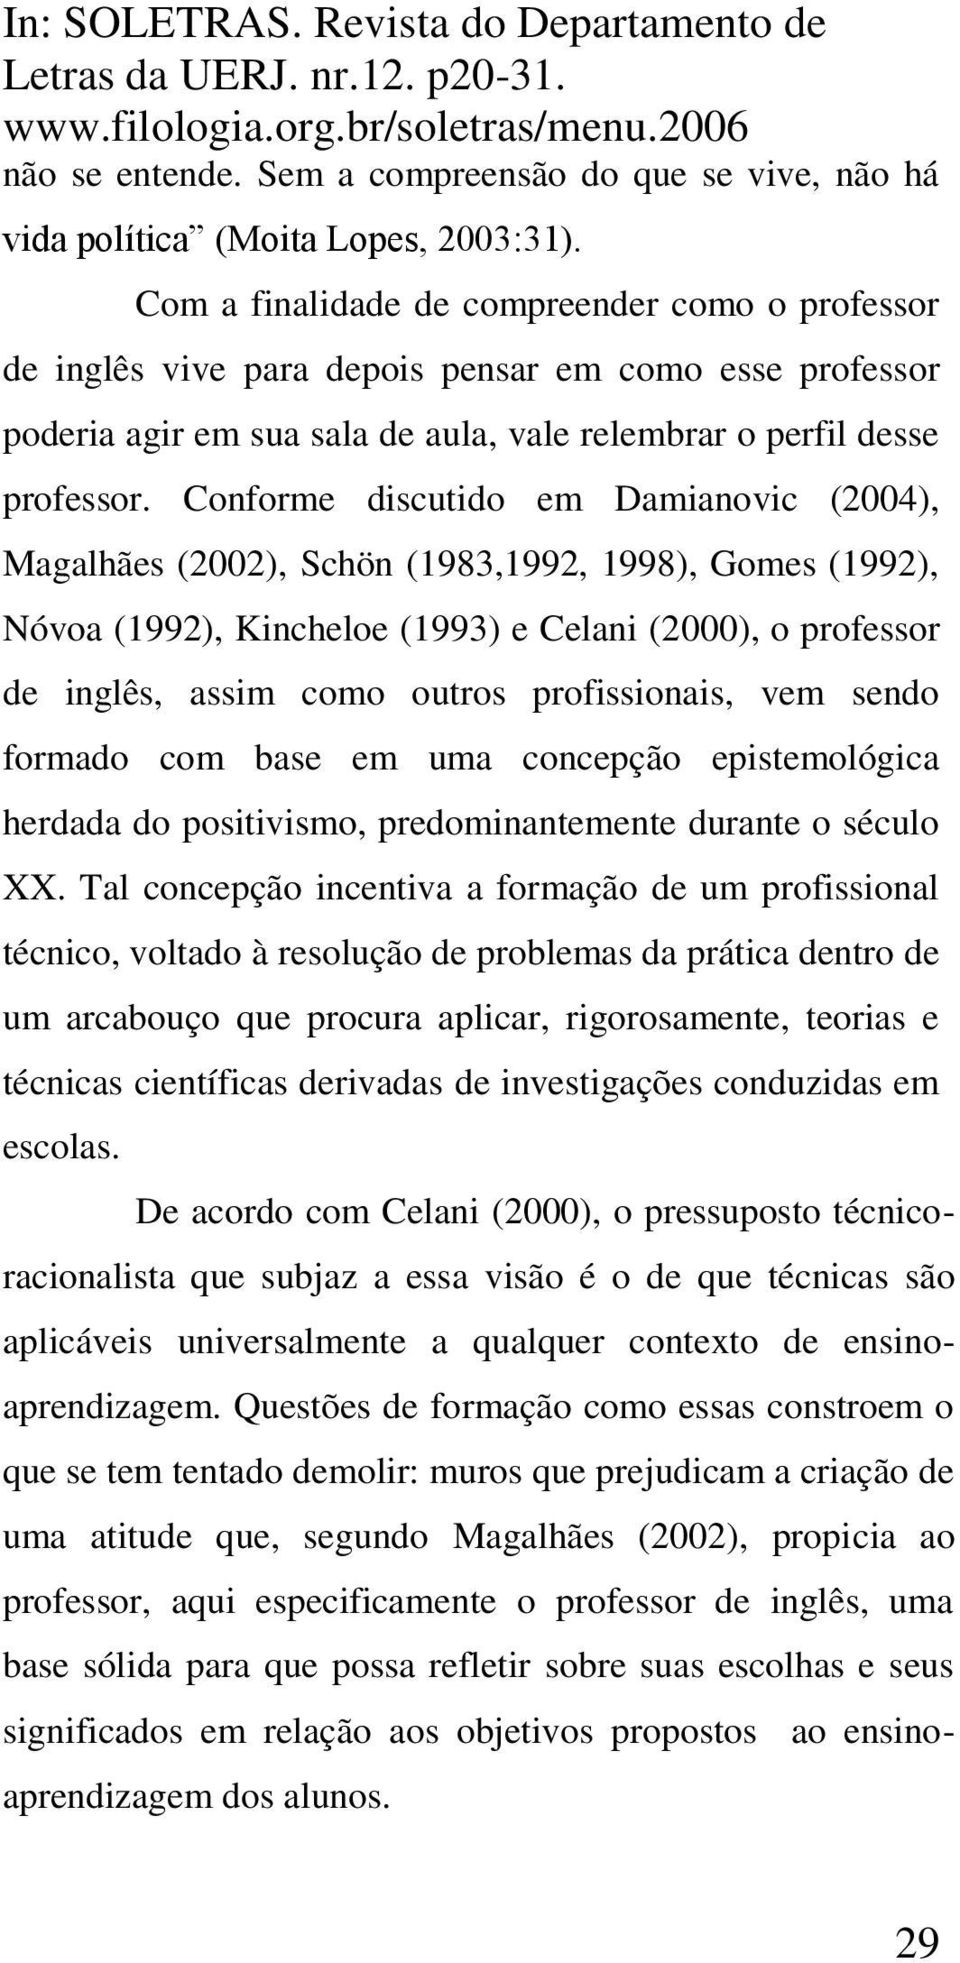 Conforme discutido em Damianovic (2004), Magalhães (2002), Schön (1983,1992, 1998), Gomes (1992), Nóvoa (1992), Kincheloe (1993) e Celani (2000), o professor de inglês, assim como outros